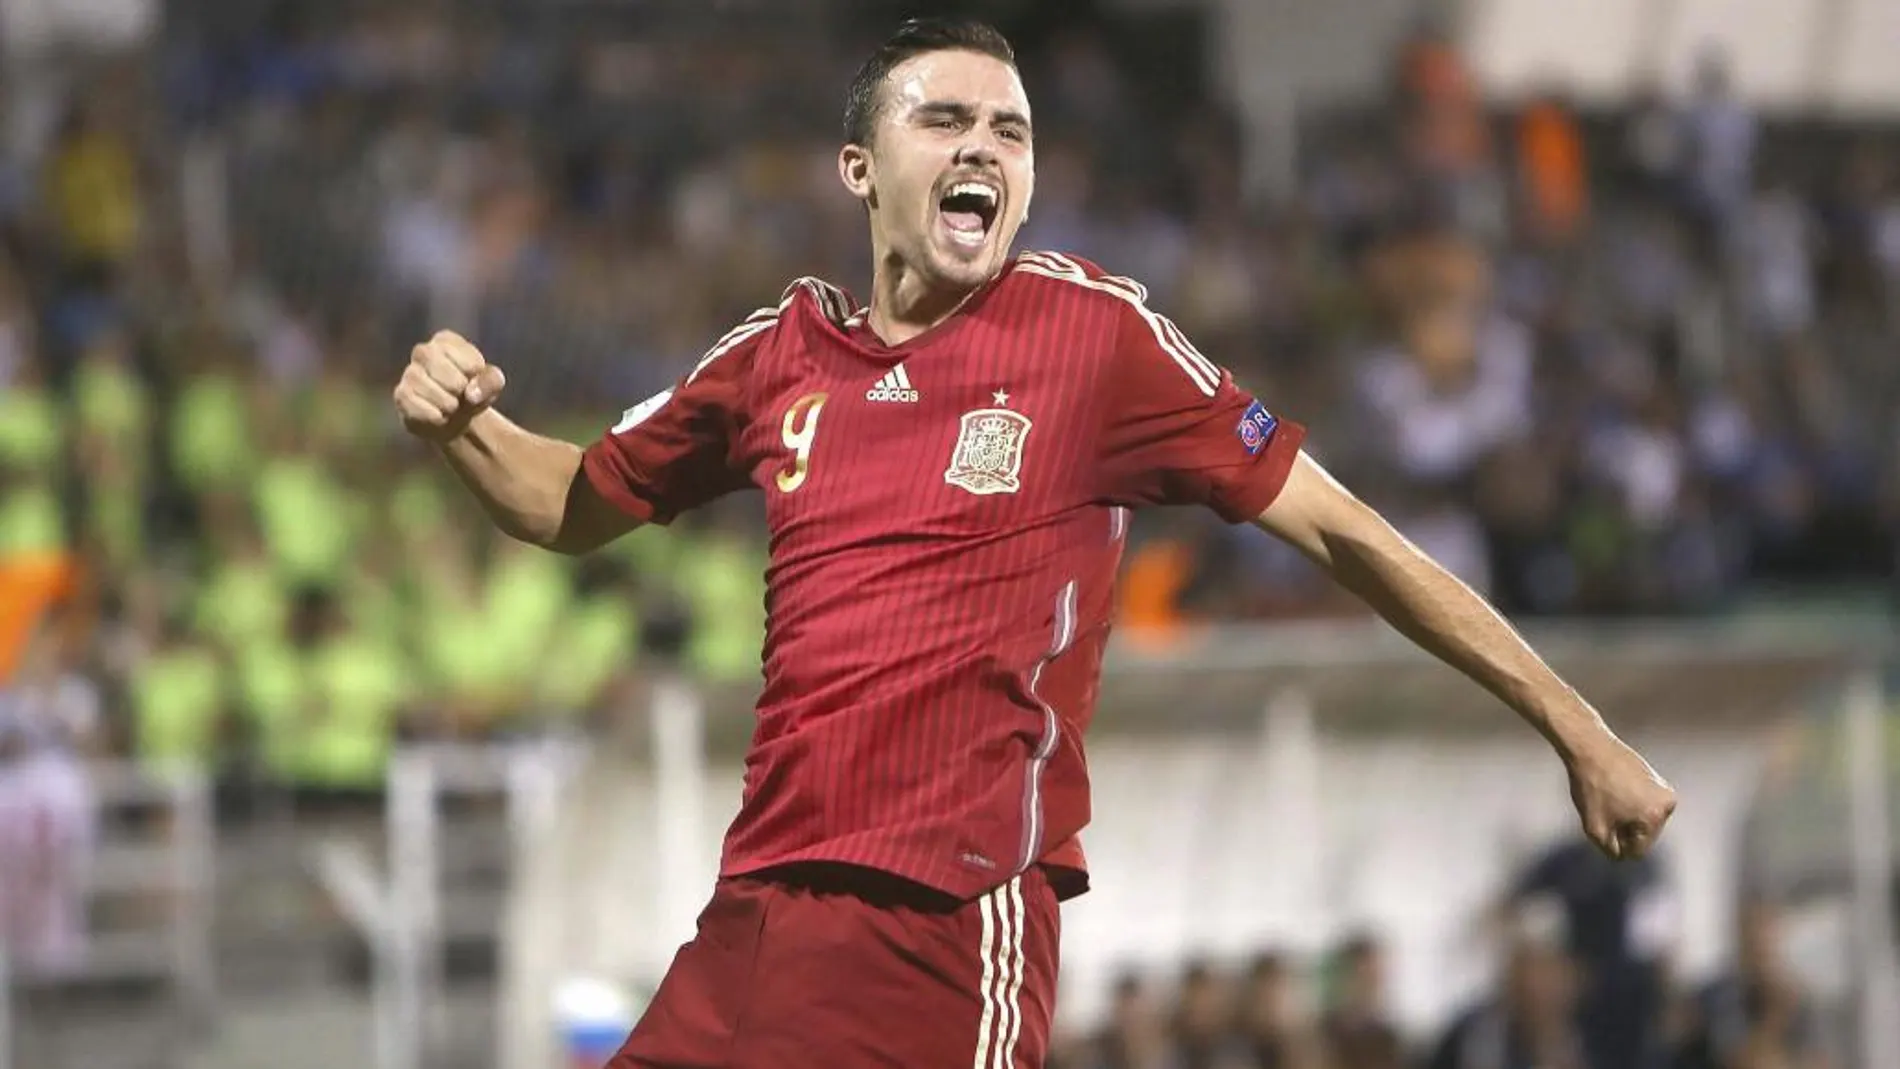 El delantero de España Mayoral celebra el gol marcado que ha marcado ante Rusia, durante la final del Europeo sub-19